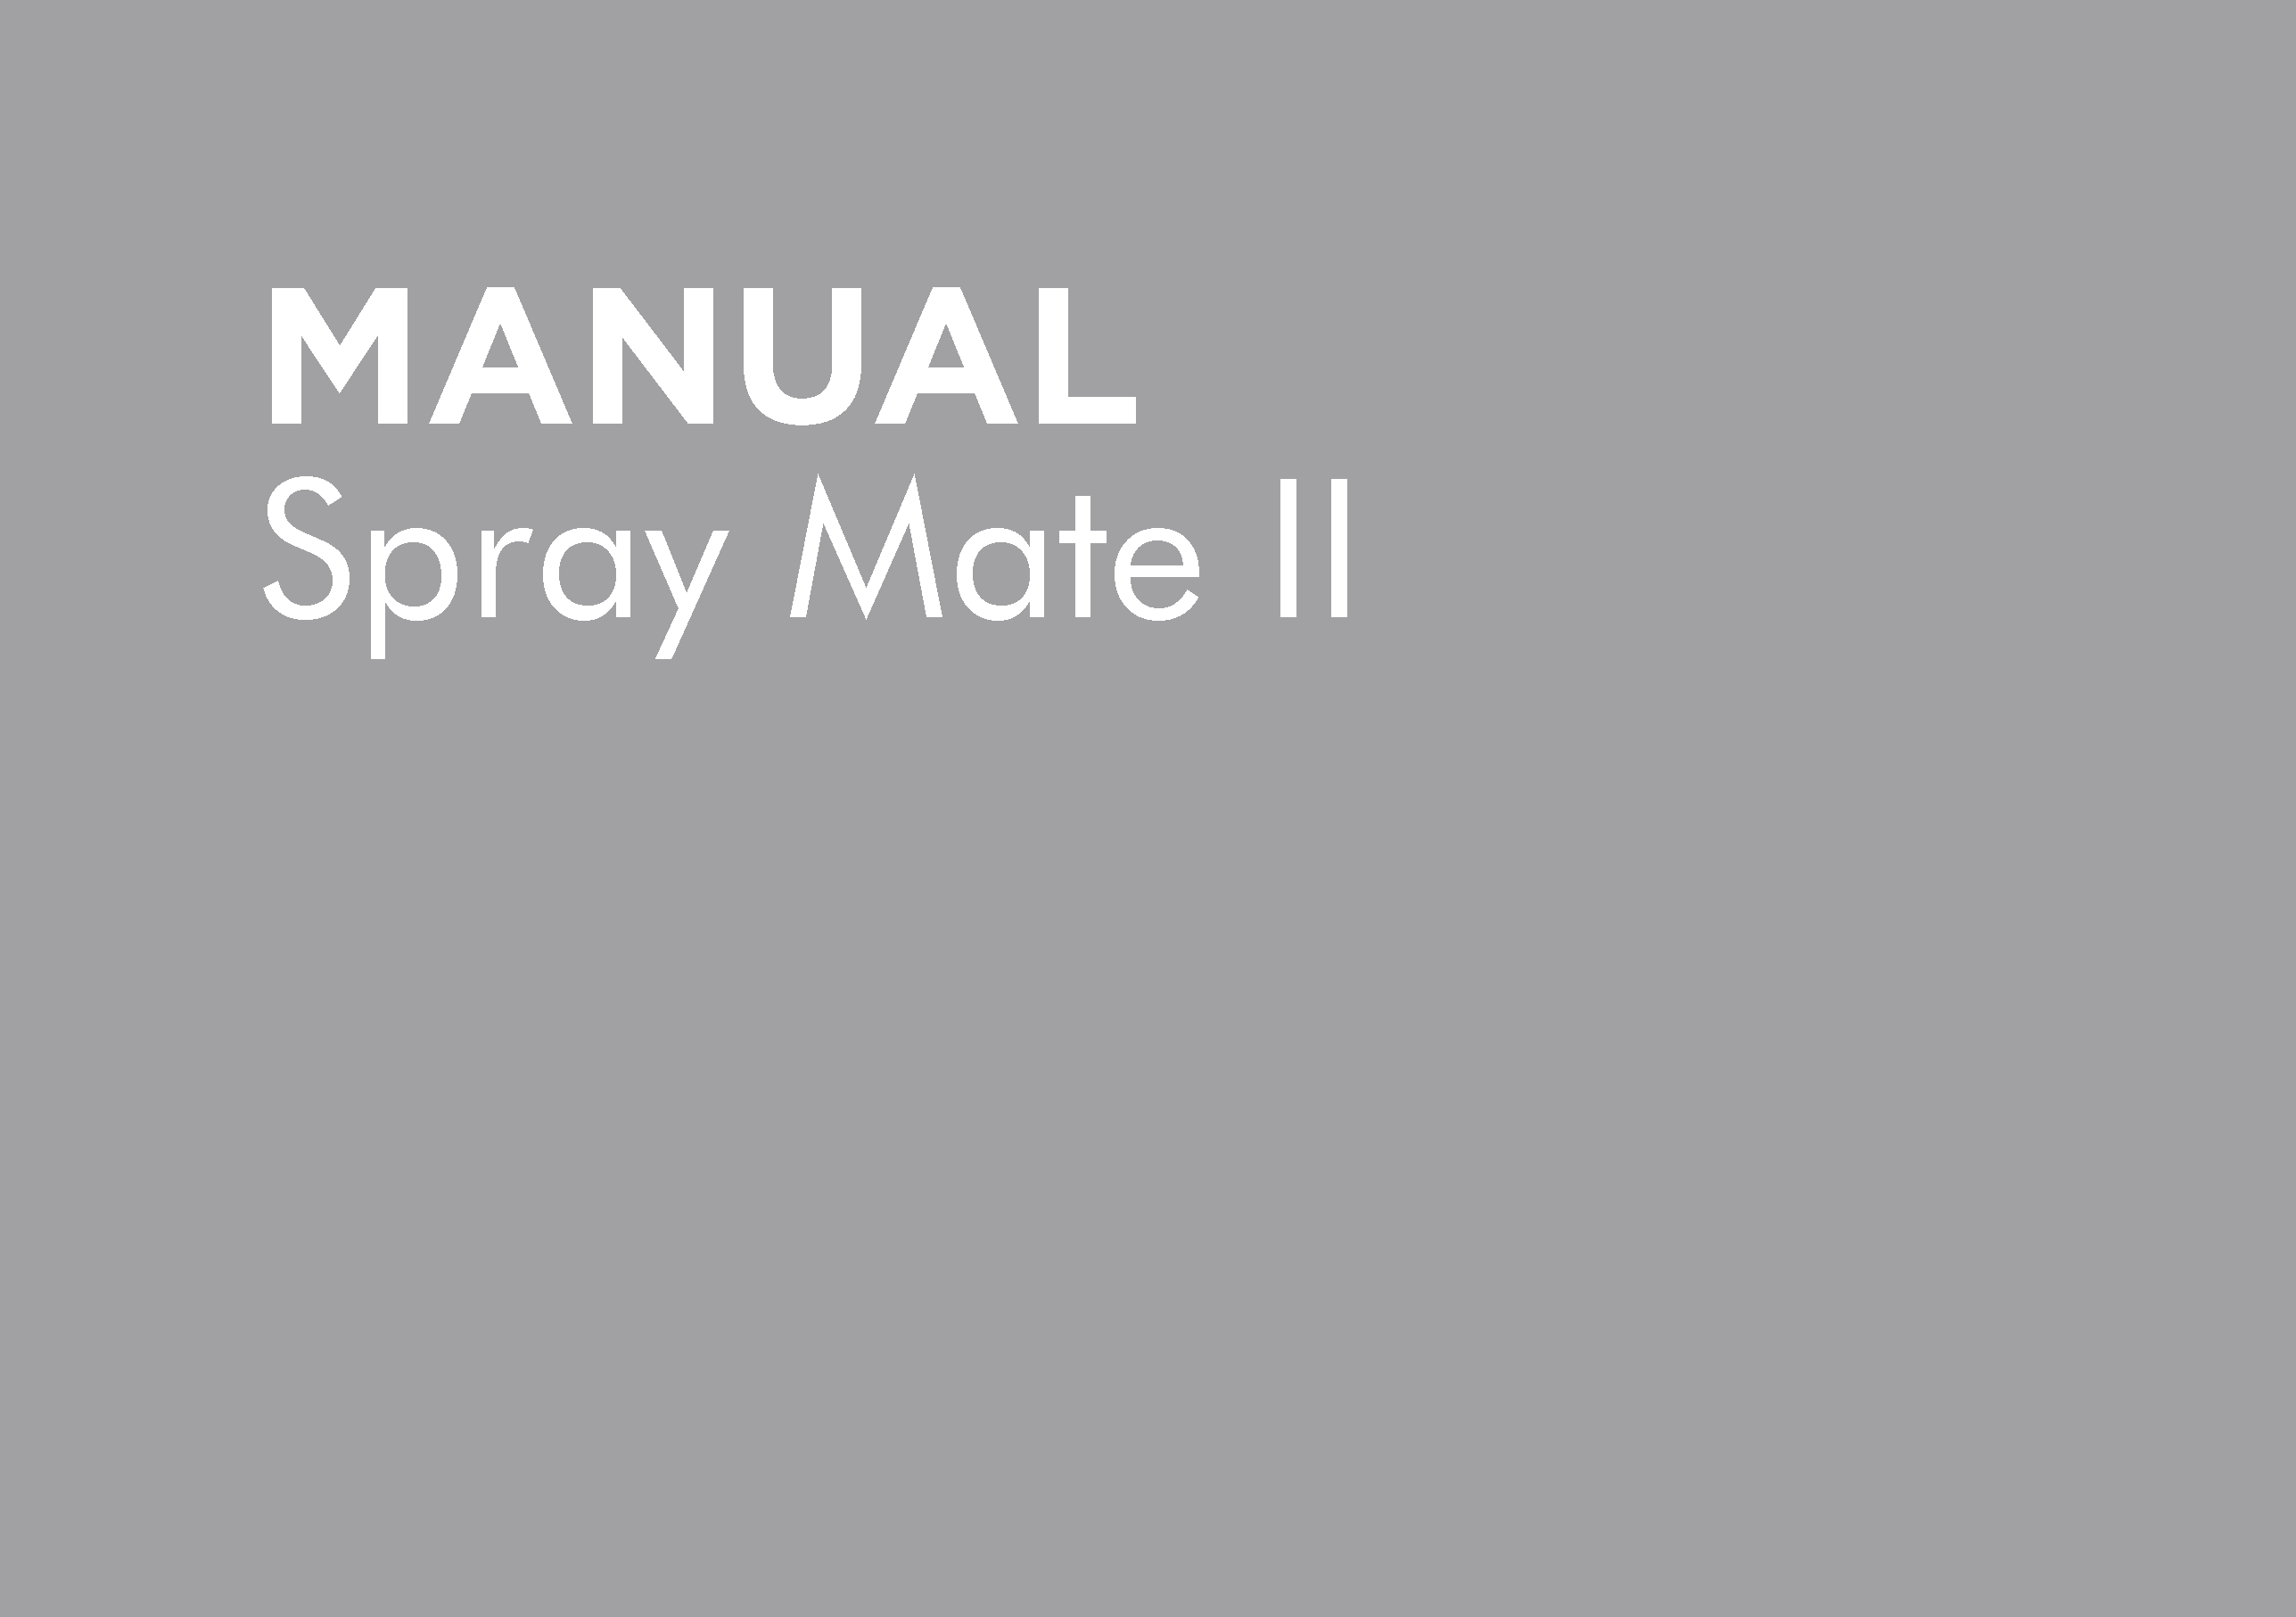 SPRAYMATE II OPERATORS MANUAL